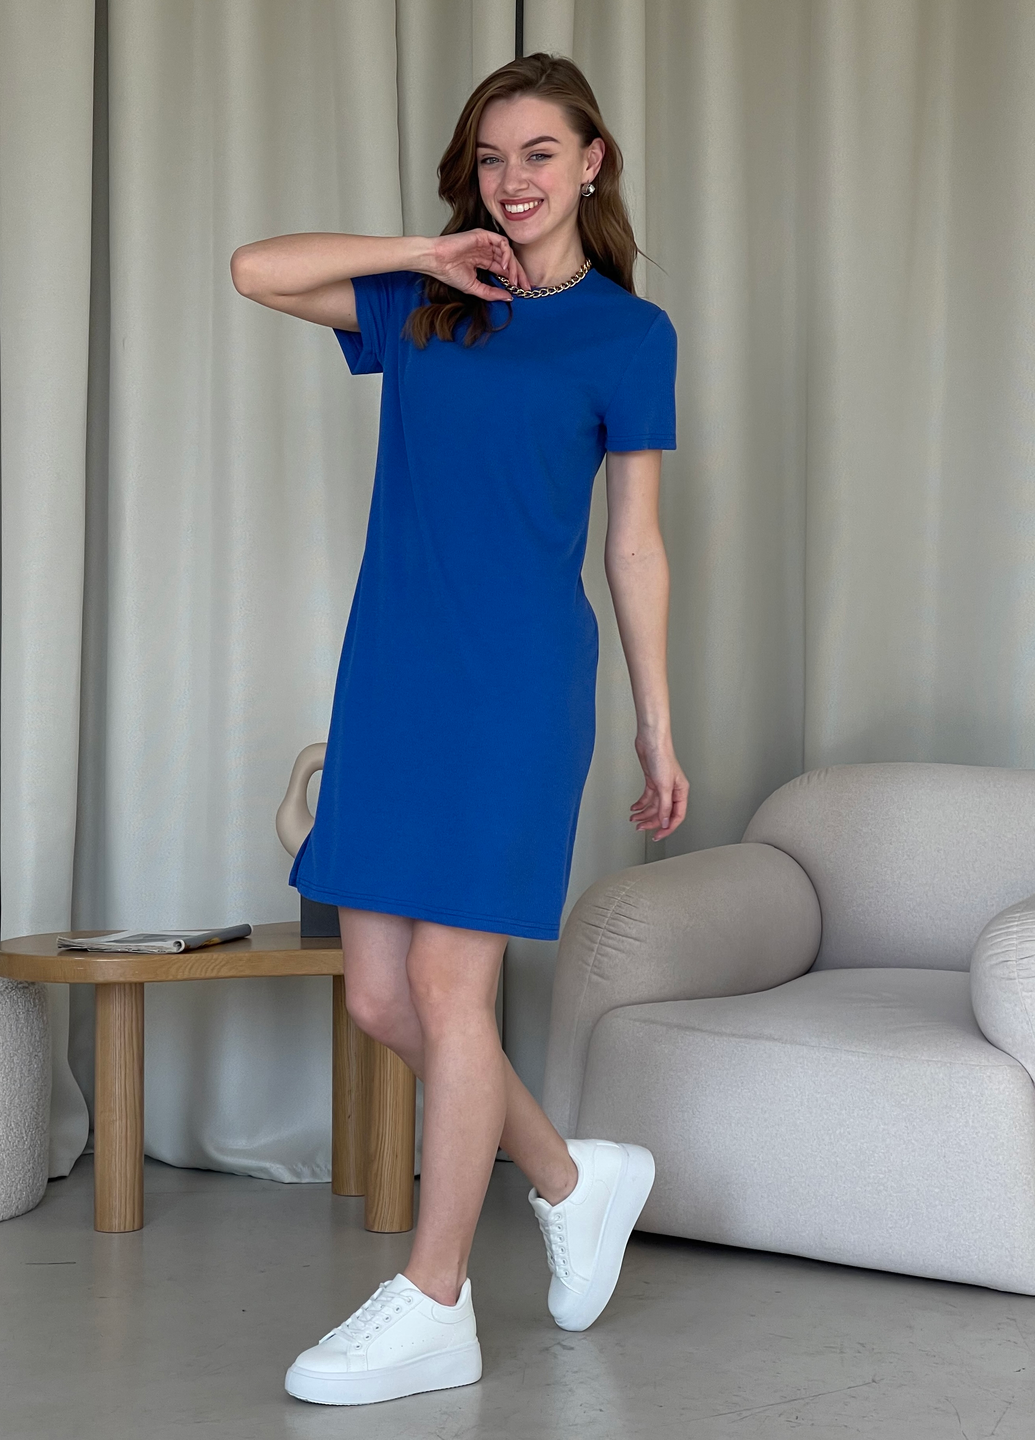 Купить Платье-футболка до колена в рубчик синее Merlini Милан 700000147 размер 42-44 (S-M) в интернет-магазине